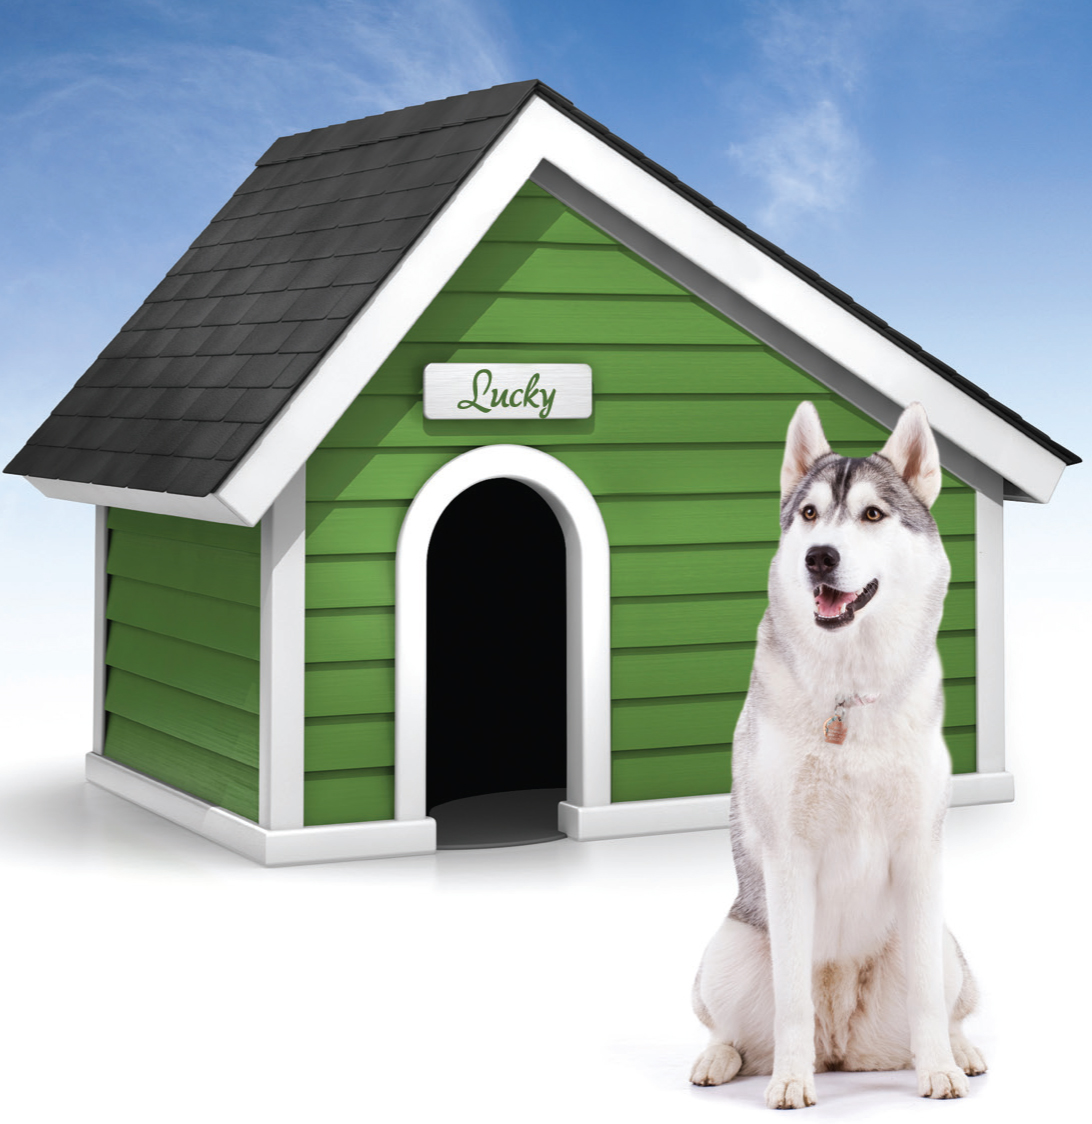 Догхаус dog house демо. Будка для собаки хаски. Дом для собаки. Красивые собачьи будки. Собака с конурой.